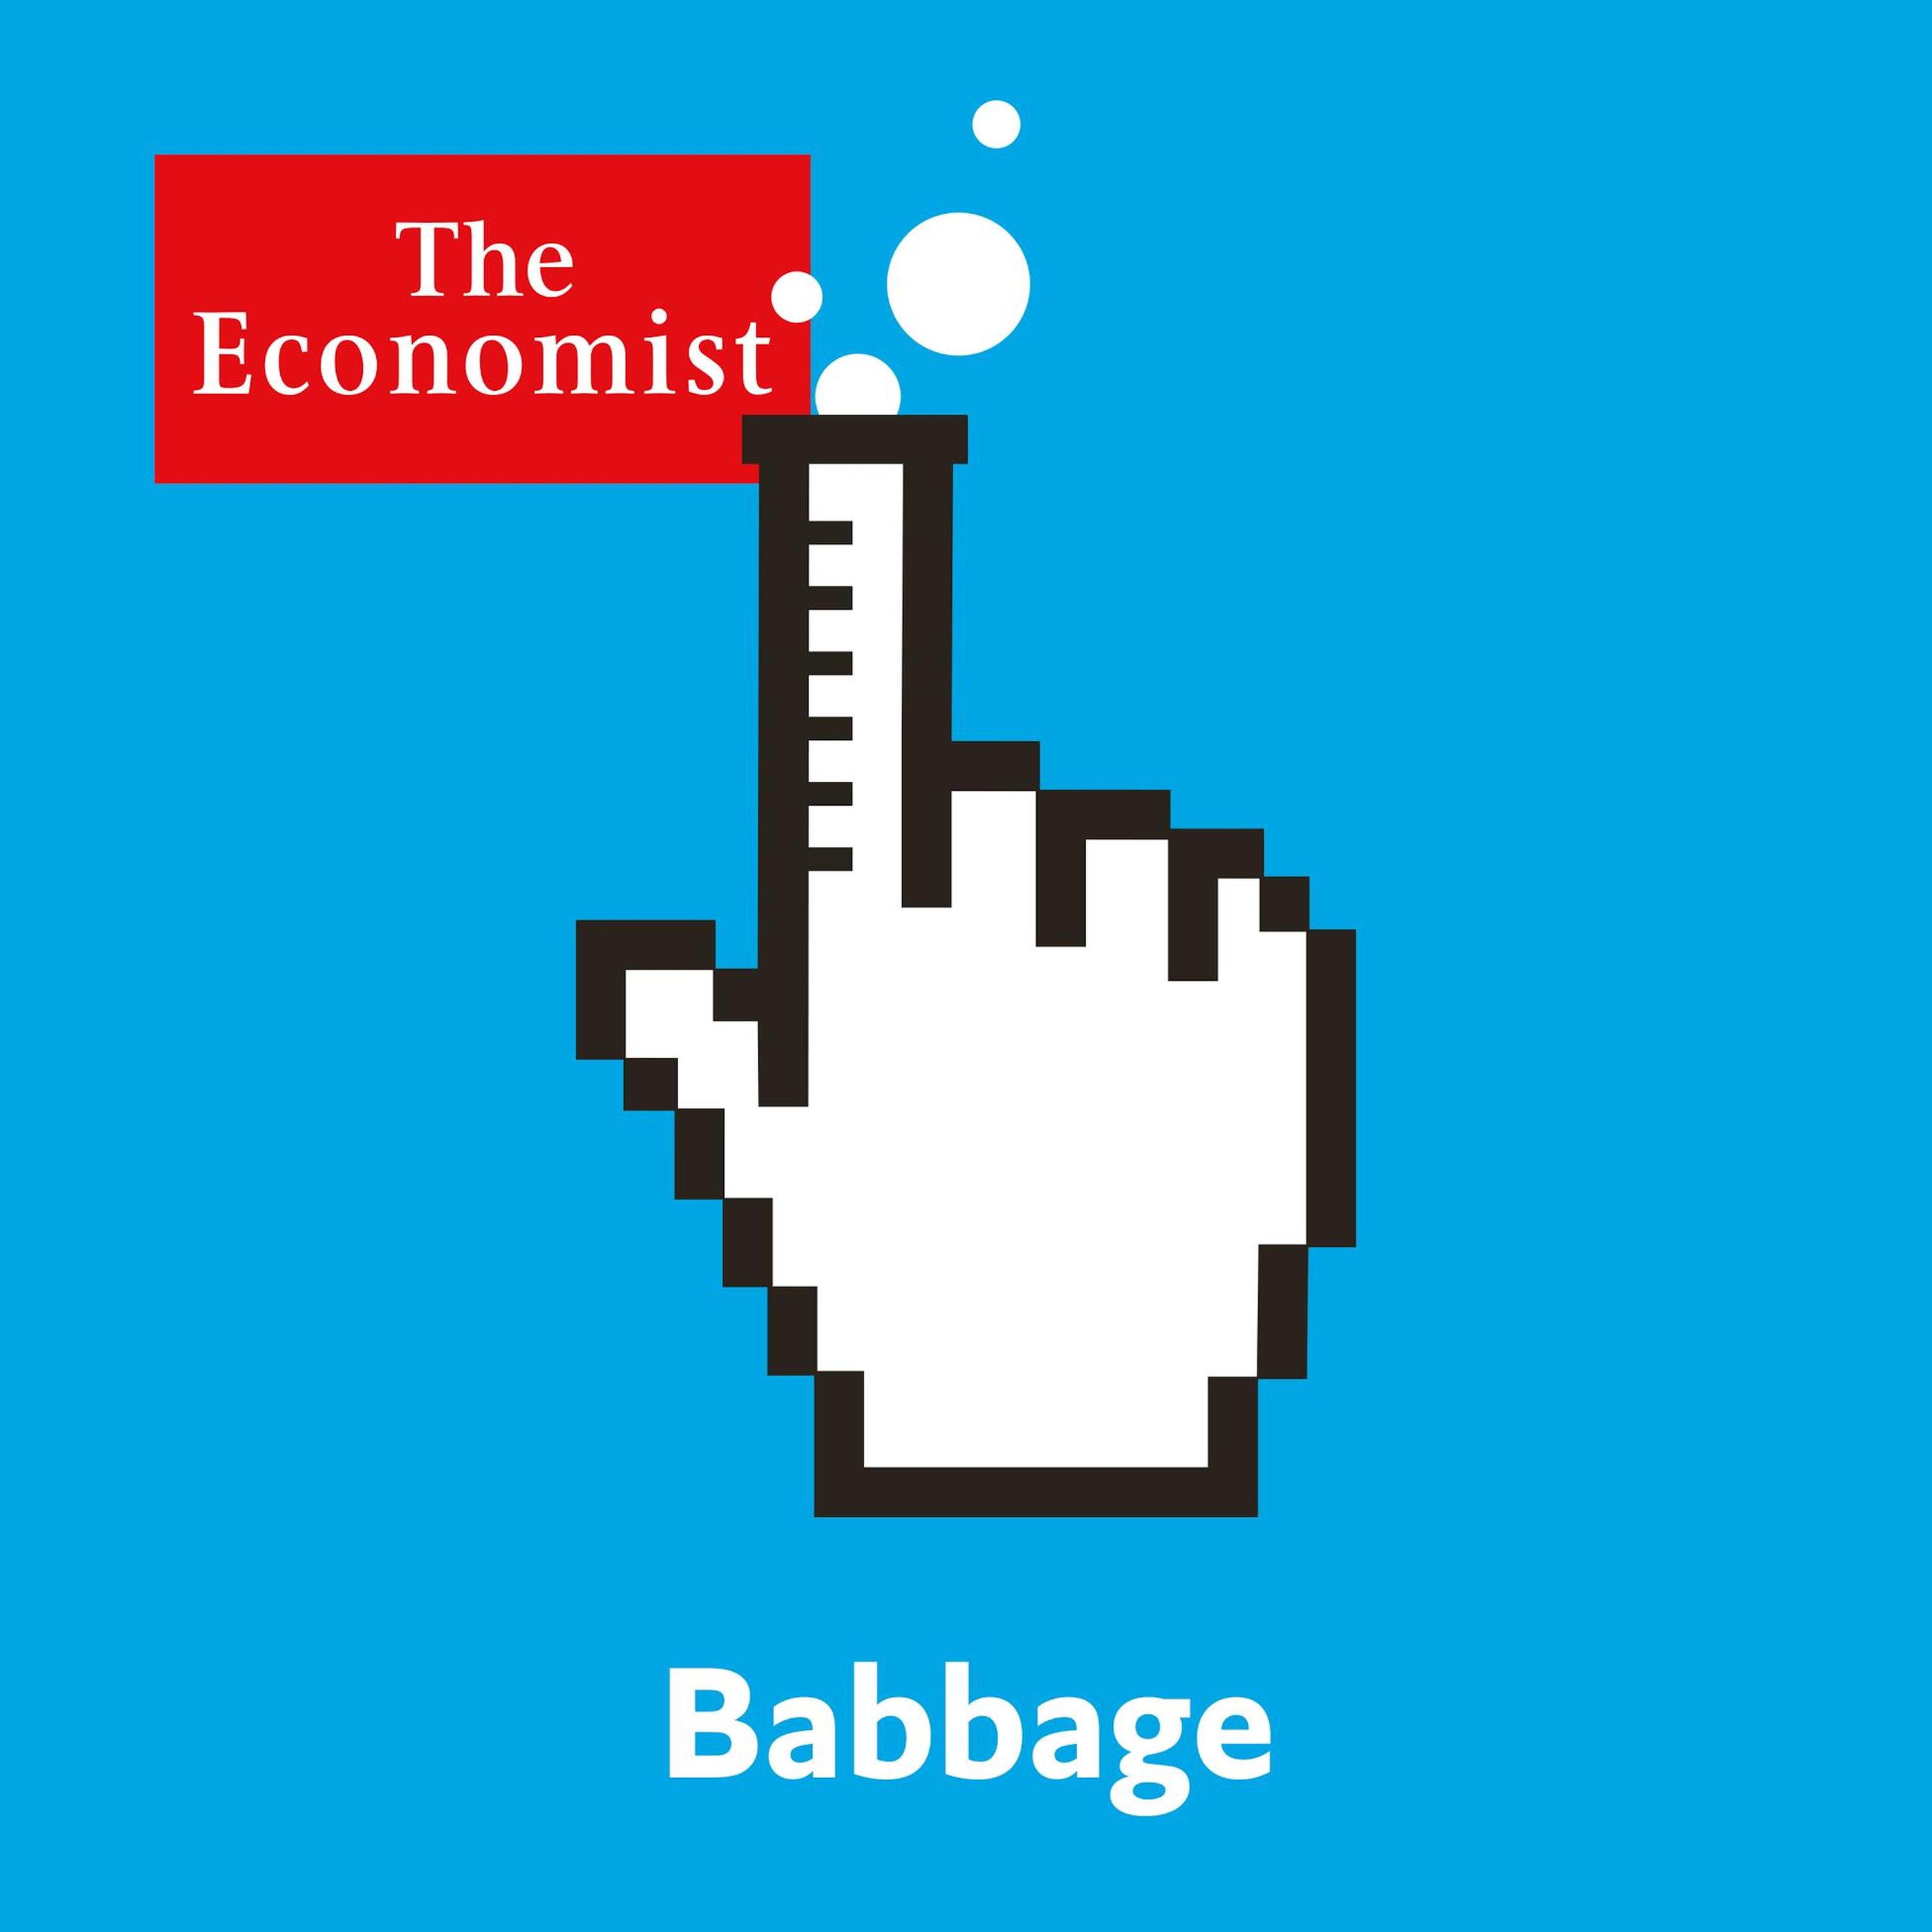 Babbage: The short-sightedness epidemic